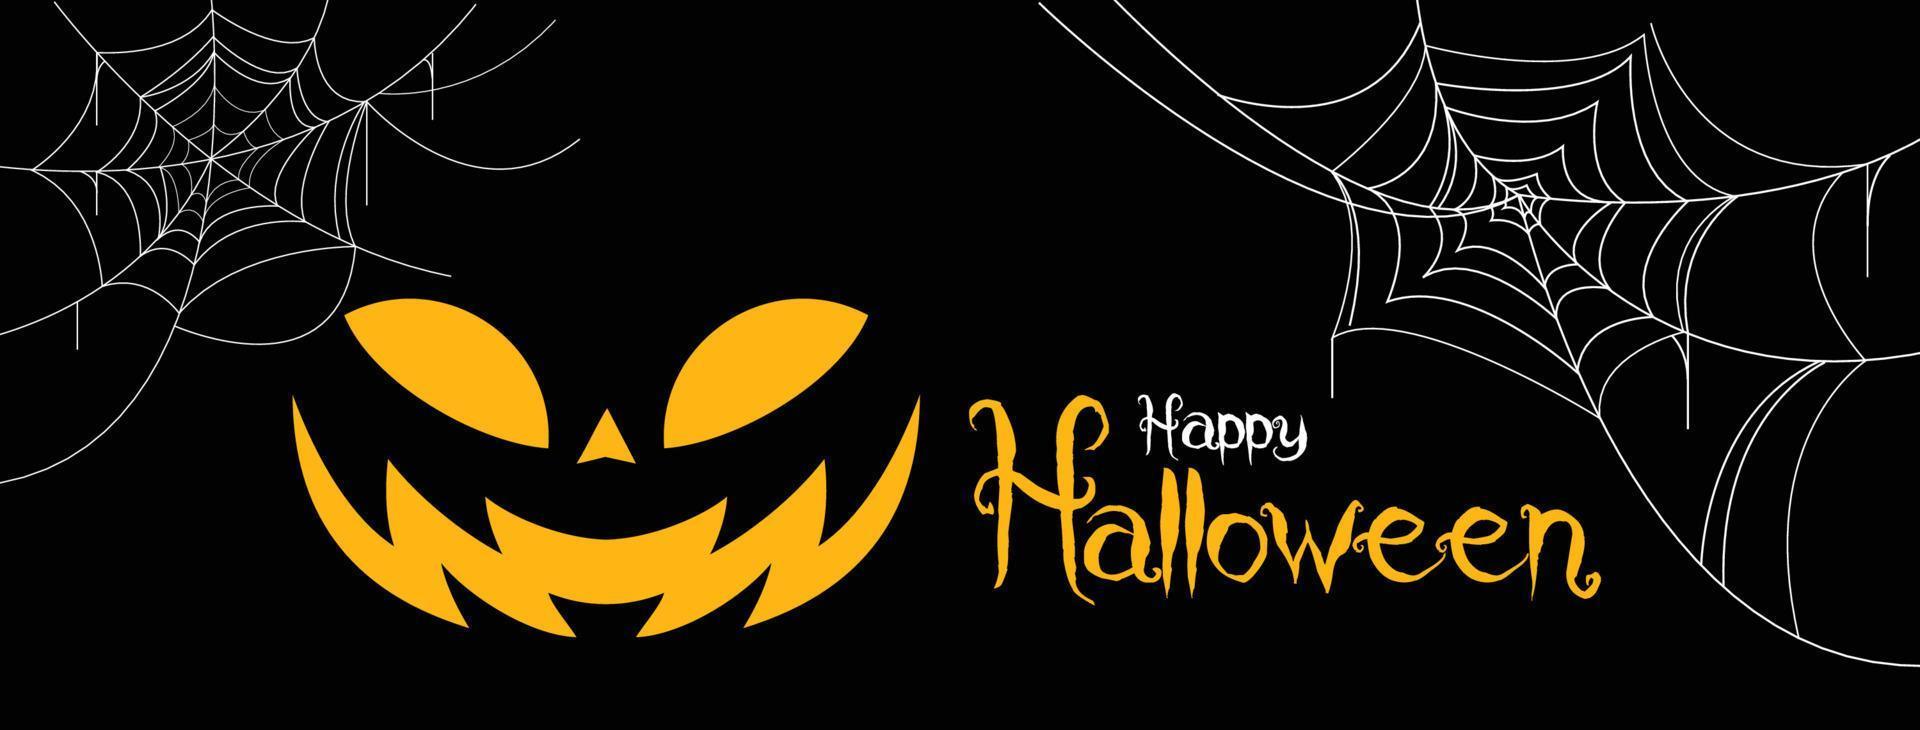 sfondo verticale di halloween con zucca, casa stregata e luna piena. modello di volantino o invito per la festa di halloween. illustrazione vettoriale. vettore